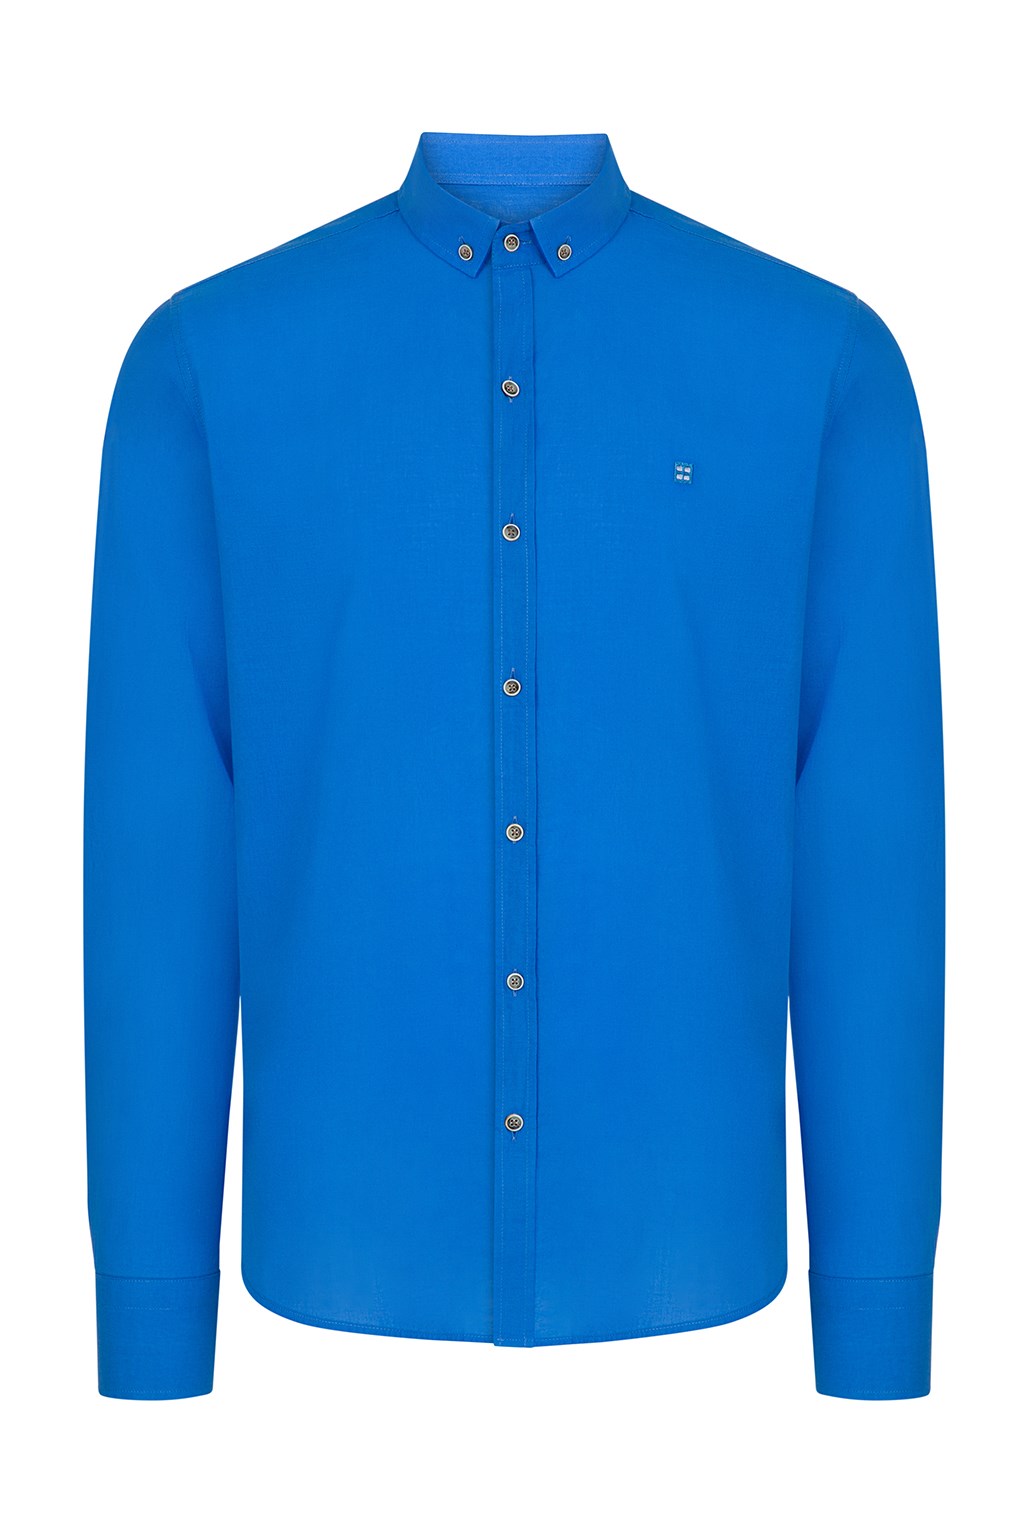 Koyu Mavi Düz Klasik Yaka Slim Fit Gömlek B002206-79 - AVVA